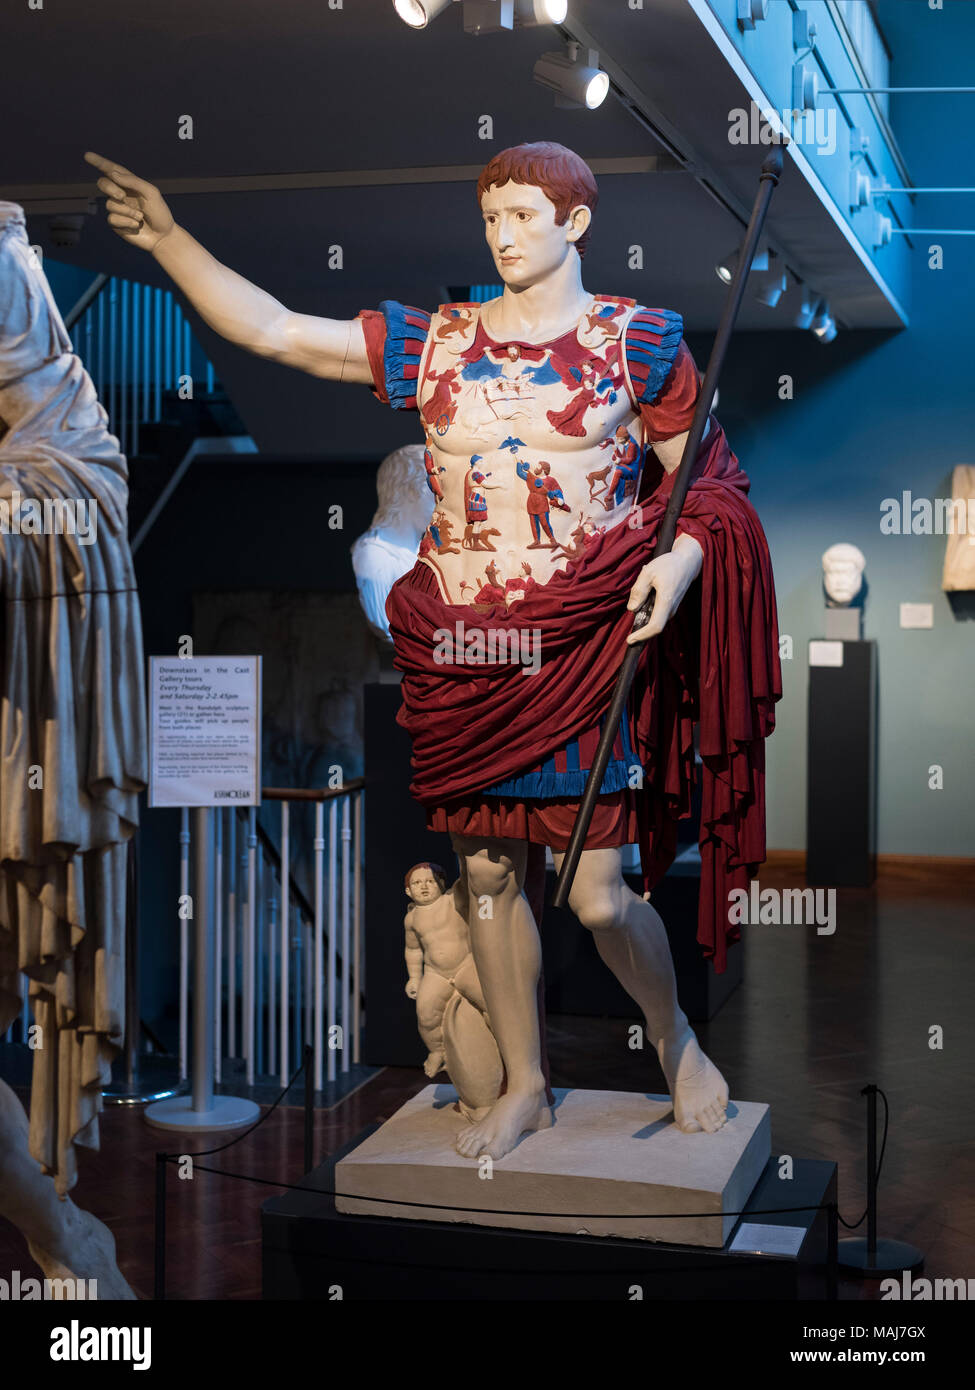 Oxford. L'Angleterre. Plâtre peint copie de la statue de l'empereur romain Auguste de Prima Porta. Ashmolean Museum. Dans cette reconstruction, l'orig Banque D'Images